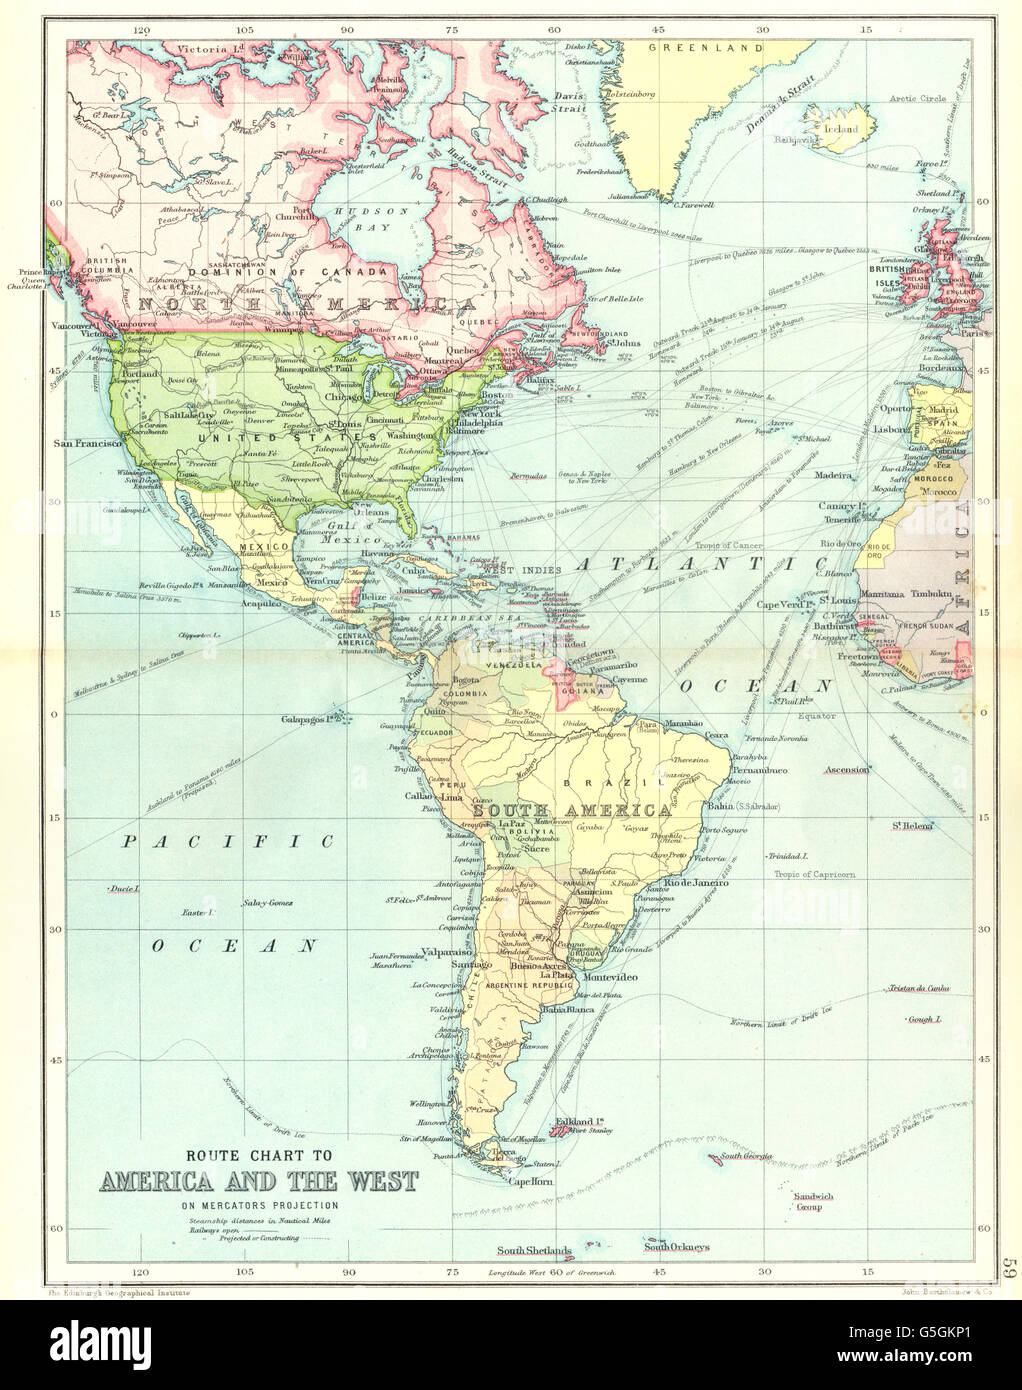 Amerika ATLANTIC: Dampfschiff Strecken zwischen Europa und Amerika, 1909-Karte Stockfoto